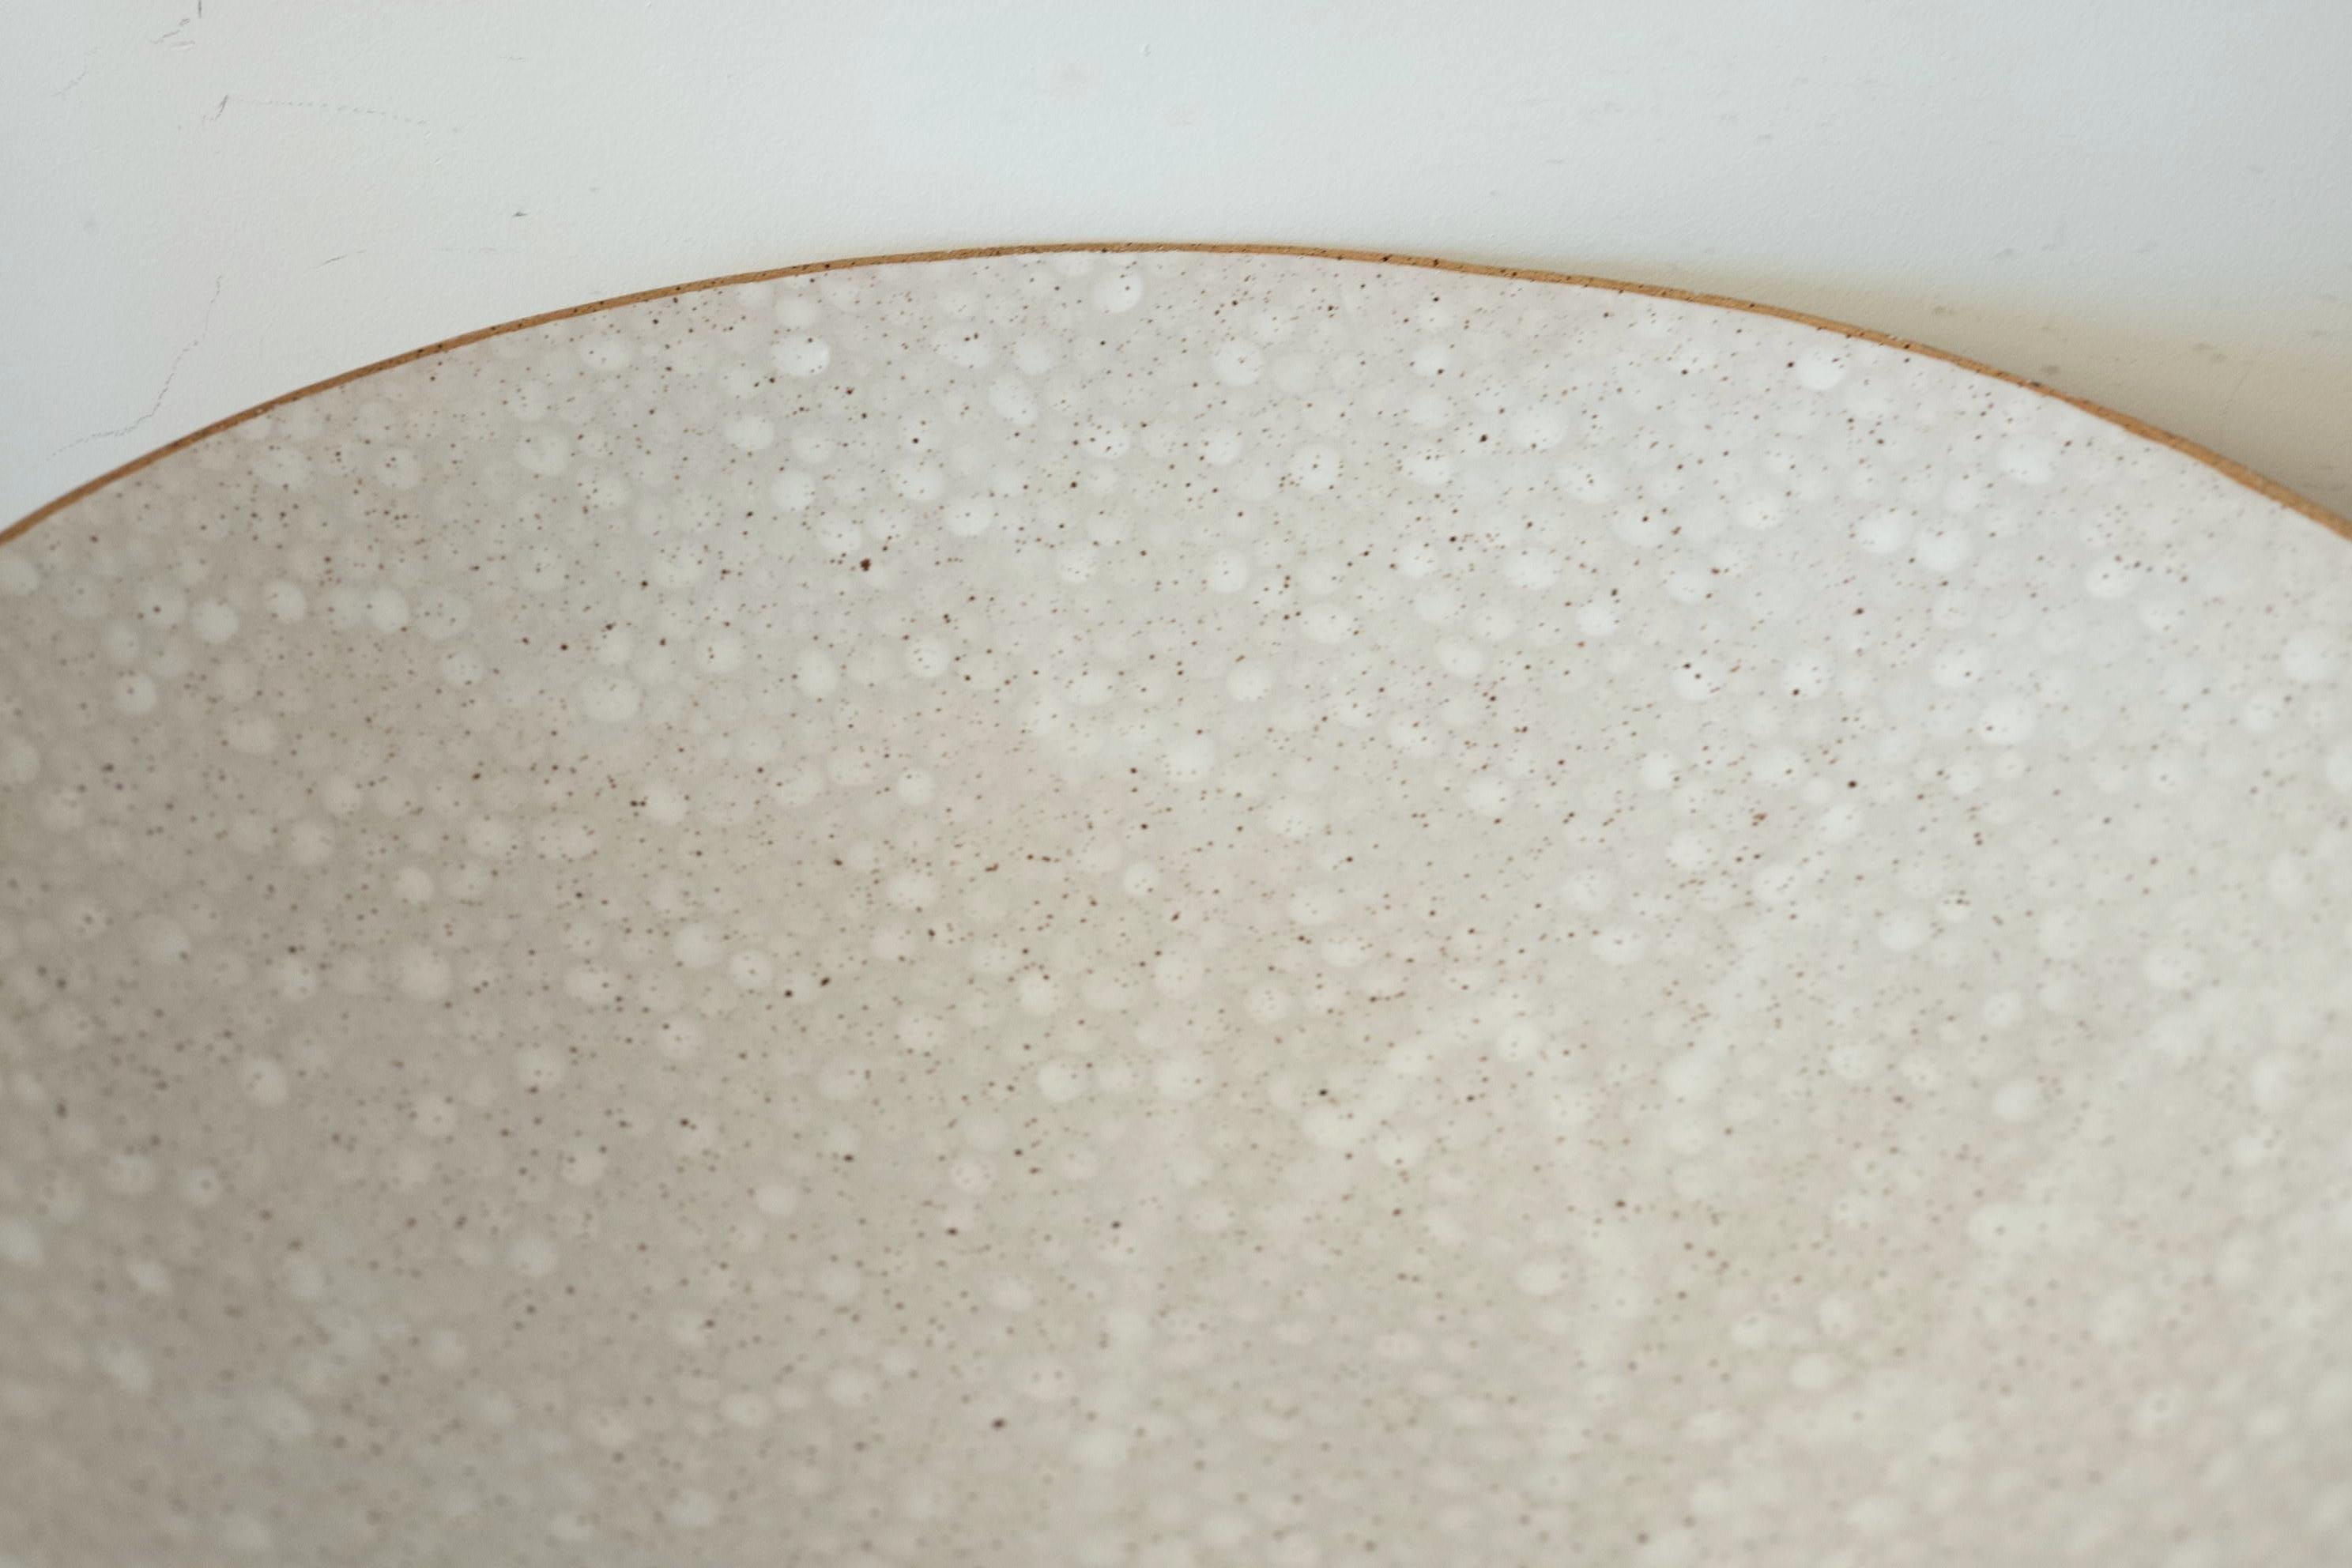 Dots Ceramic Bowl by Lana Kova, Various Glazes Available 2